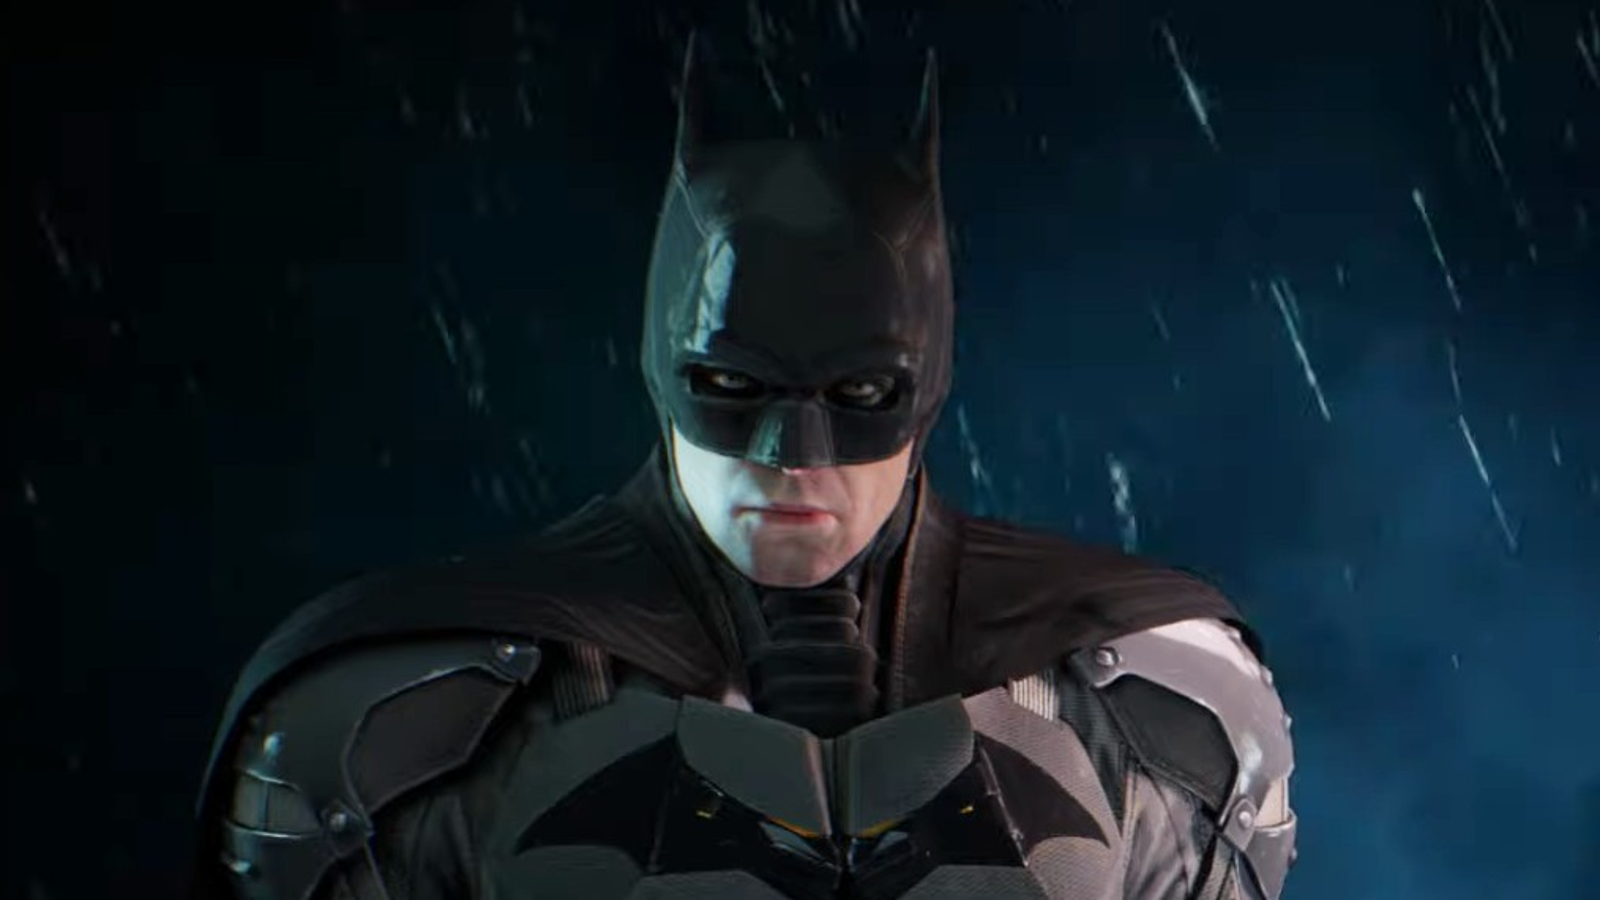 Batman: Arkham Knight review: The Batman's final chapter - CNET